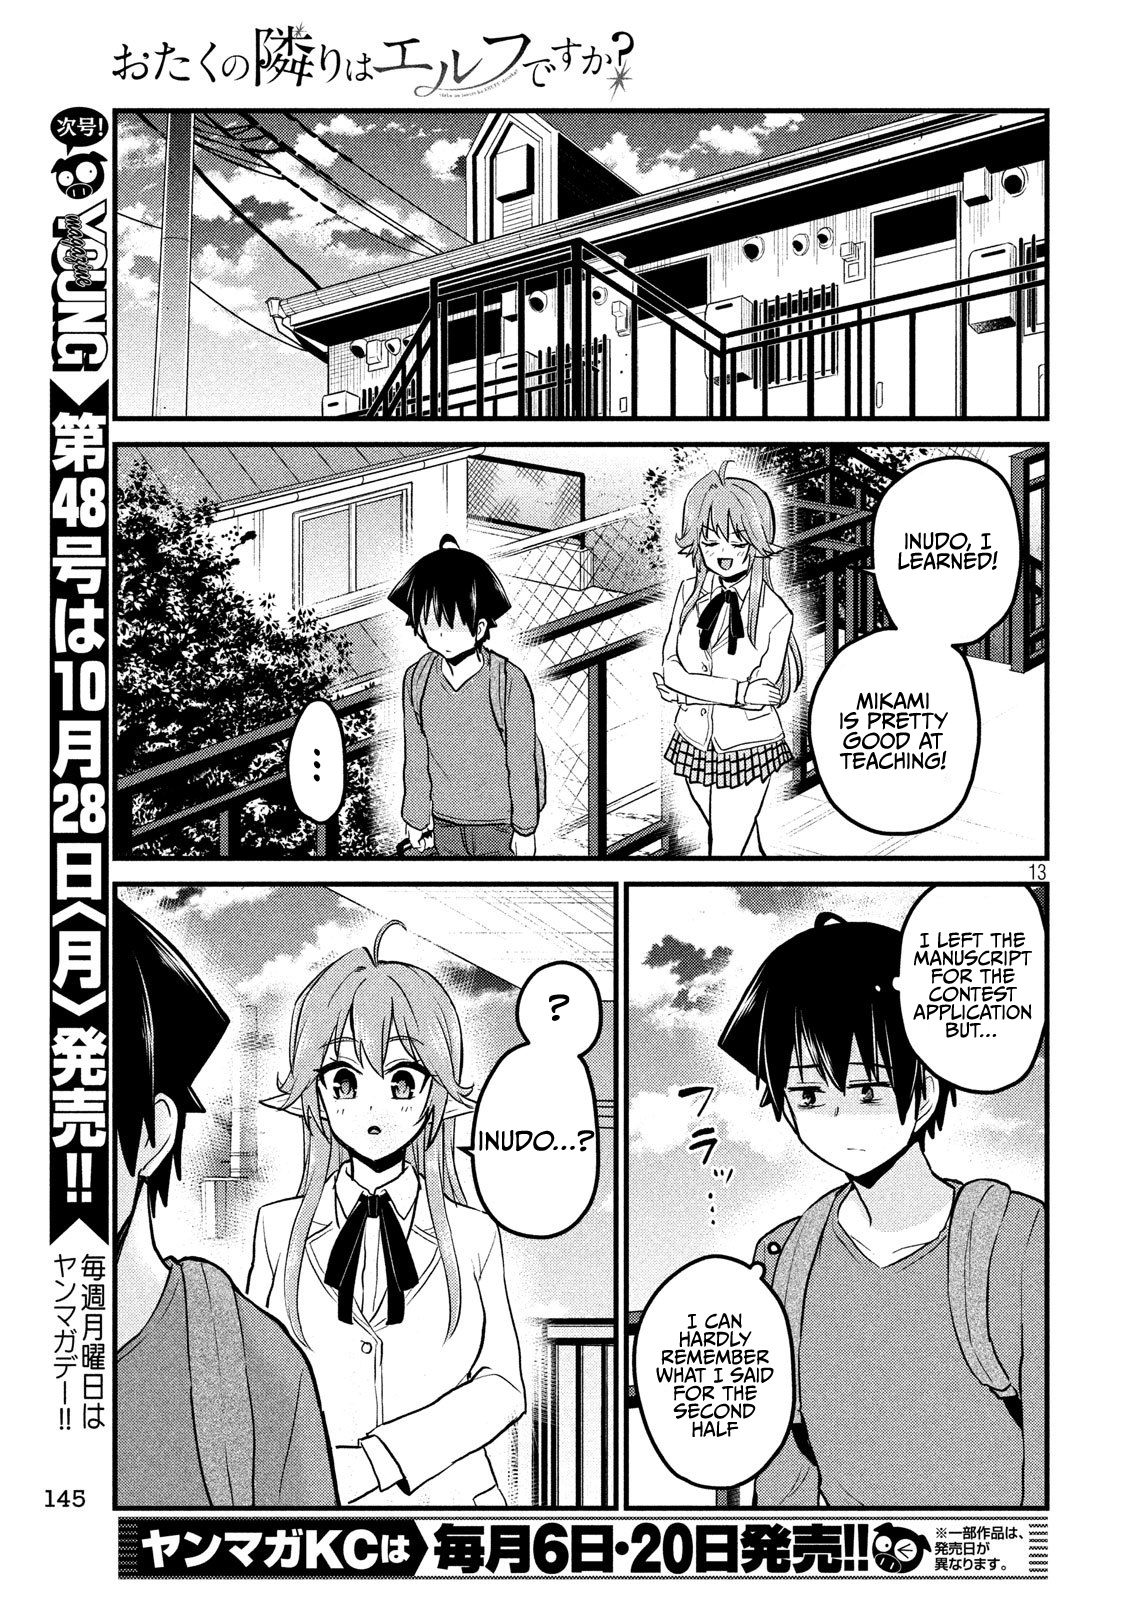 Otaku no Tonari wa ERUFU Desuka? - Chapter 8 Page 13